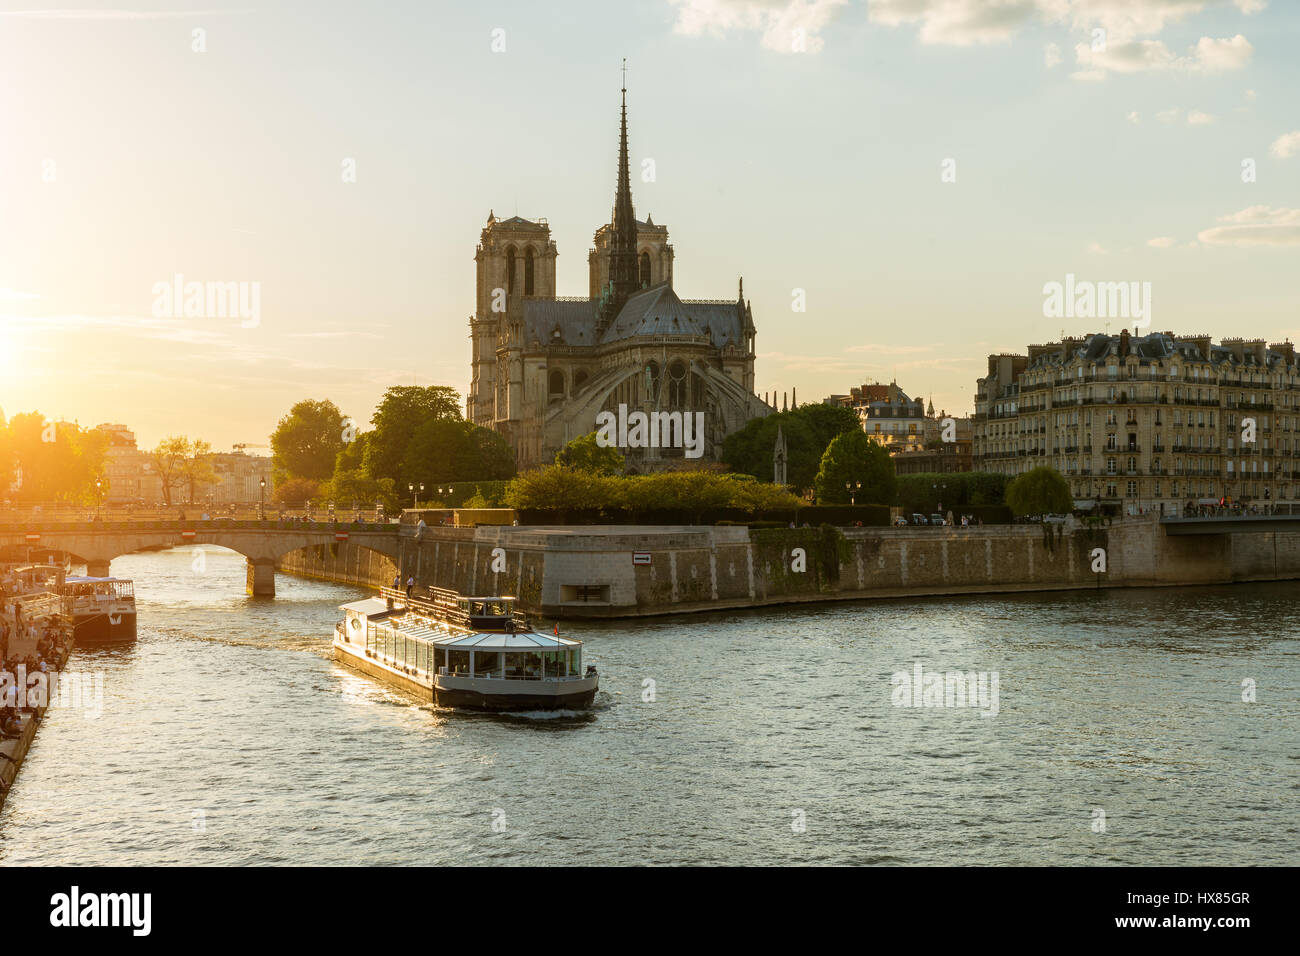 Notre Dame de Paris avec croisière sur la Seine à Paris, France Banque D'Images